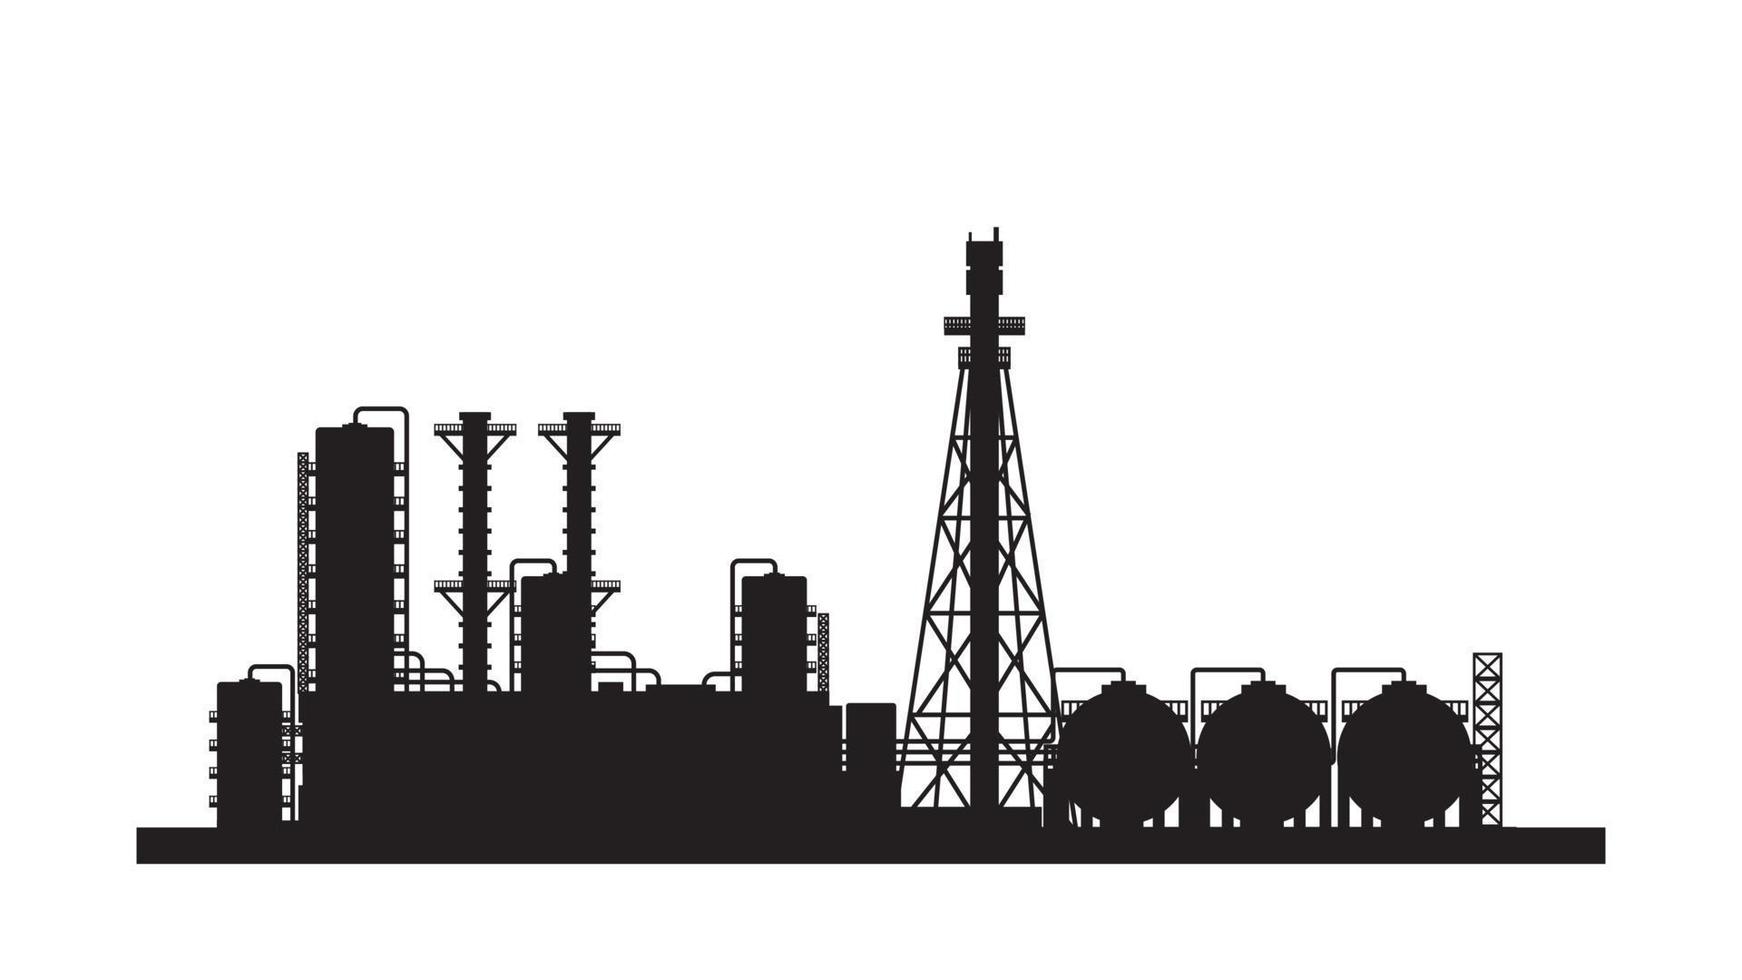 pétrole raffinerie plante et chimique usine silhouette vecteur illustration